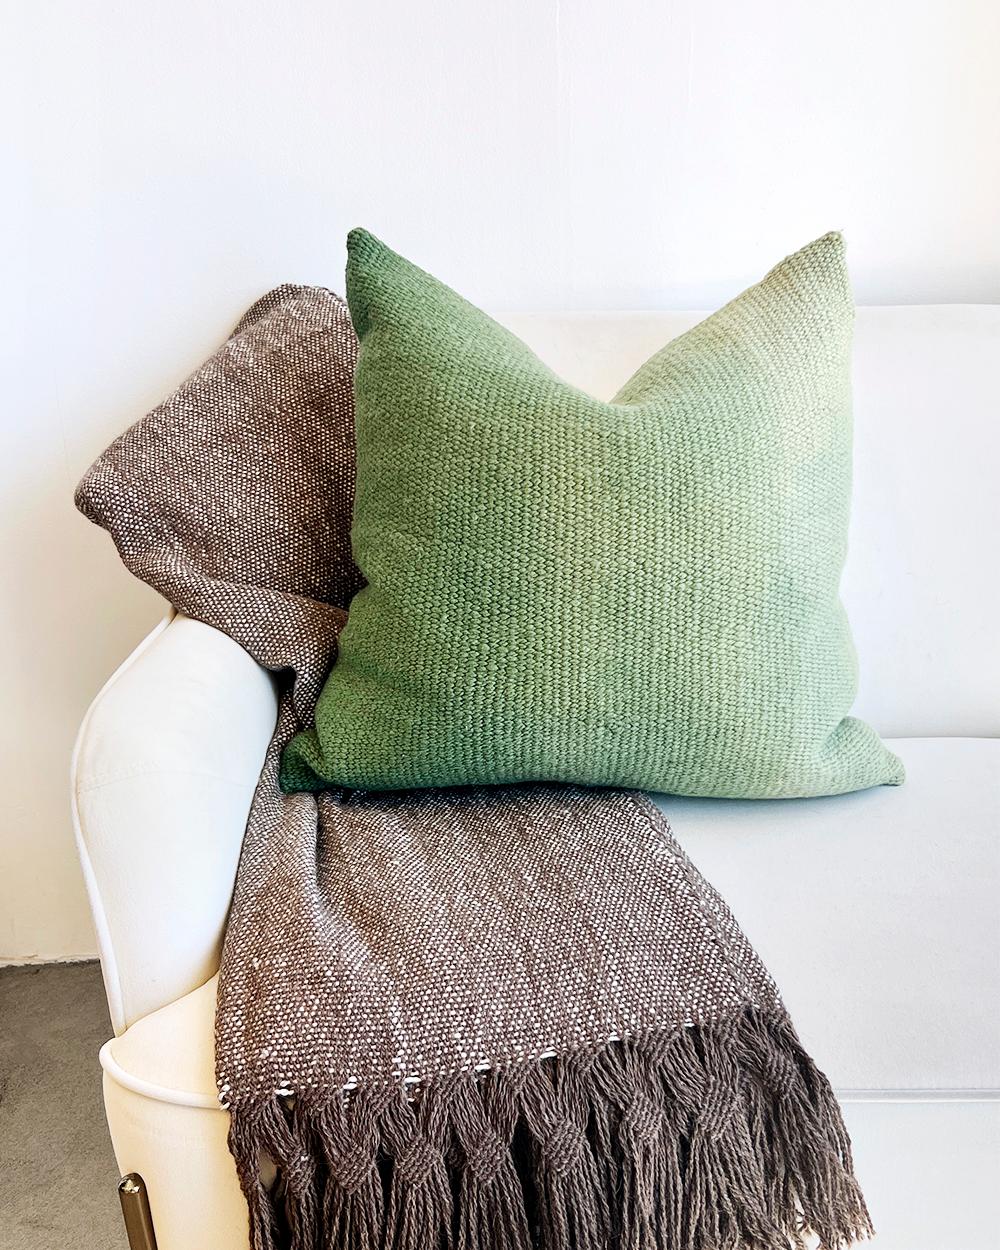 Añade color a tu sofá este otoño
Este cojín Ombre Verde Matiz es una forma única de añadir un estilo moderno y orgánico a la decoración de tu casa. Tejido a mano con lana de oveja, el efecto ombre se consigue con tintes vegetales que le dan un